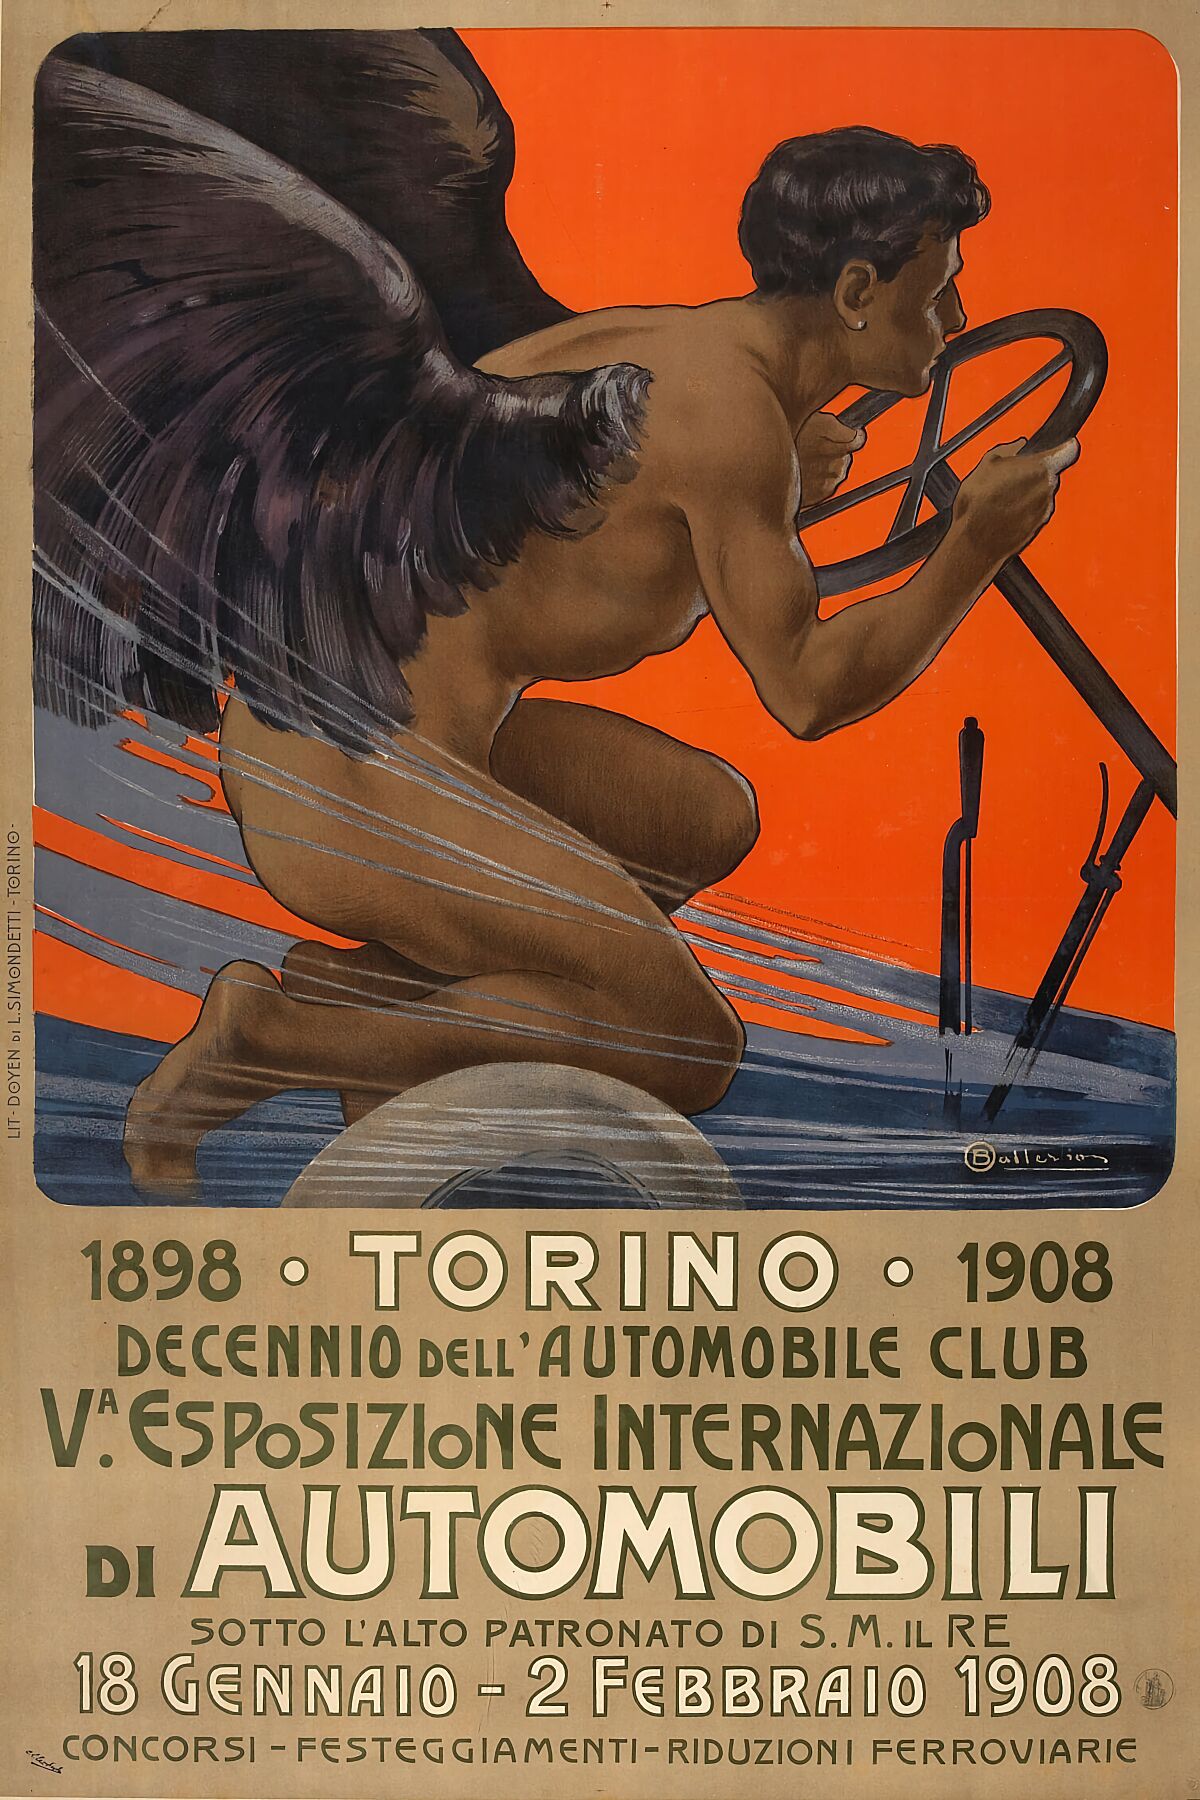 Va. Esposizione Internationazionale di Automobili, Torino by Osvaldo Ballerio - 1908